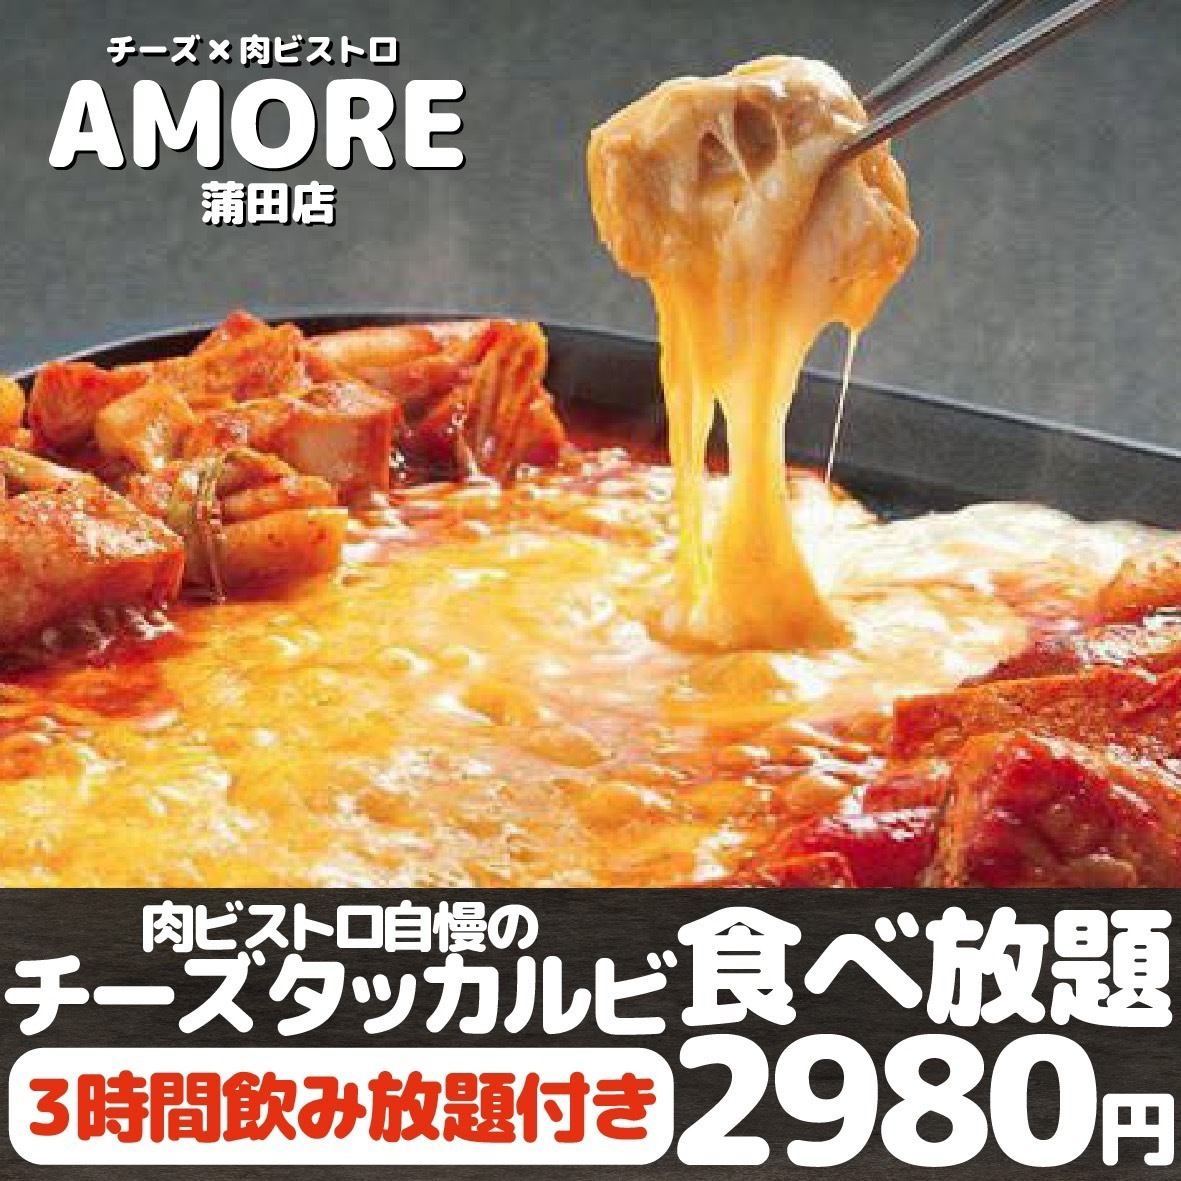 【吃到饱】3小时吃到喝奶酪炸鸡排套餐♪ 2,480日元